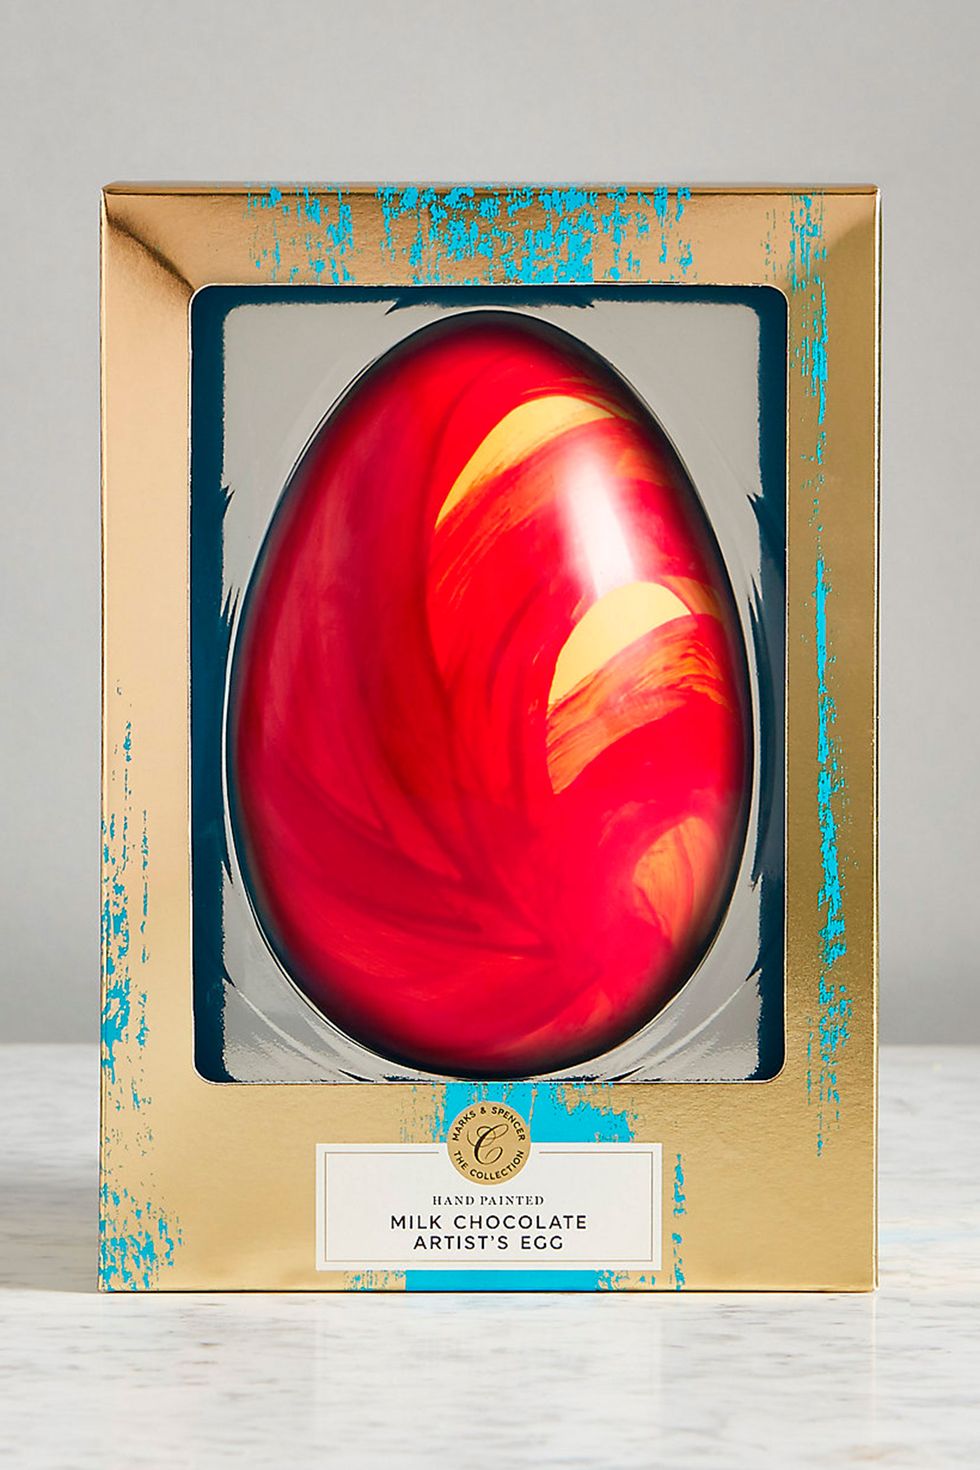 Best luxury easter eggs - Marks & Spencer hand painted easter egg